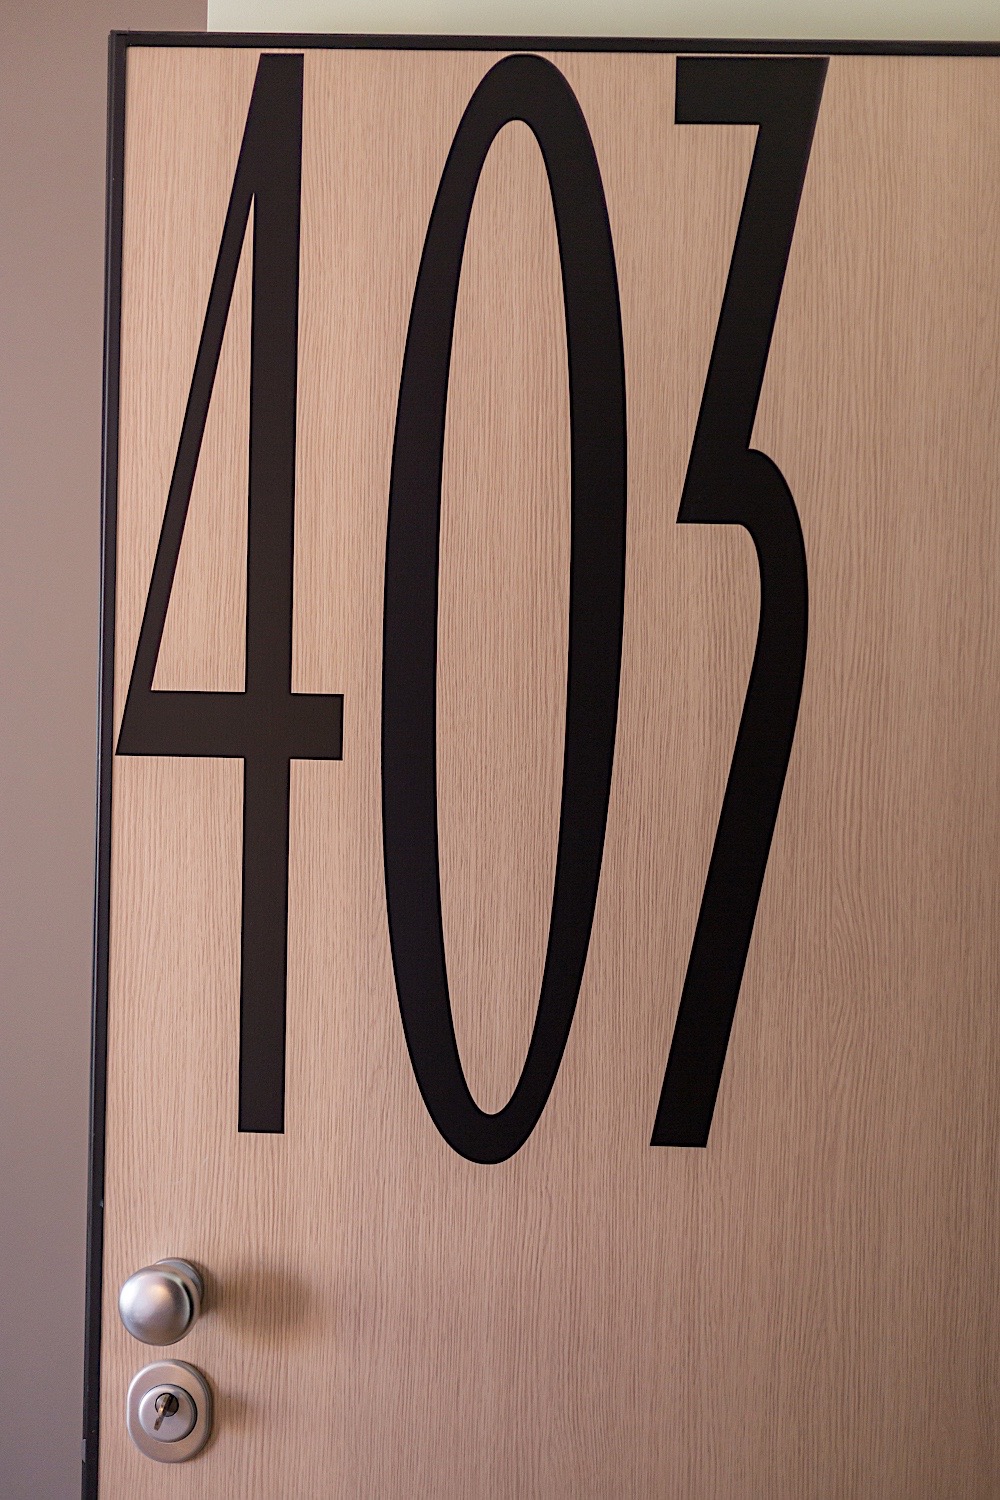 Room 403